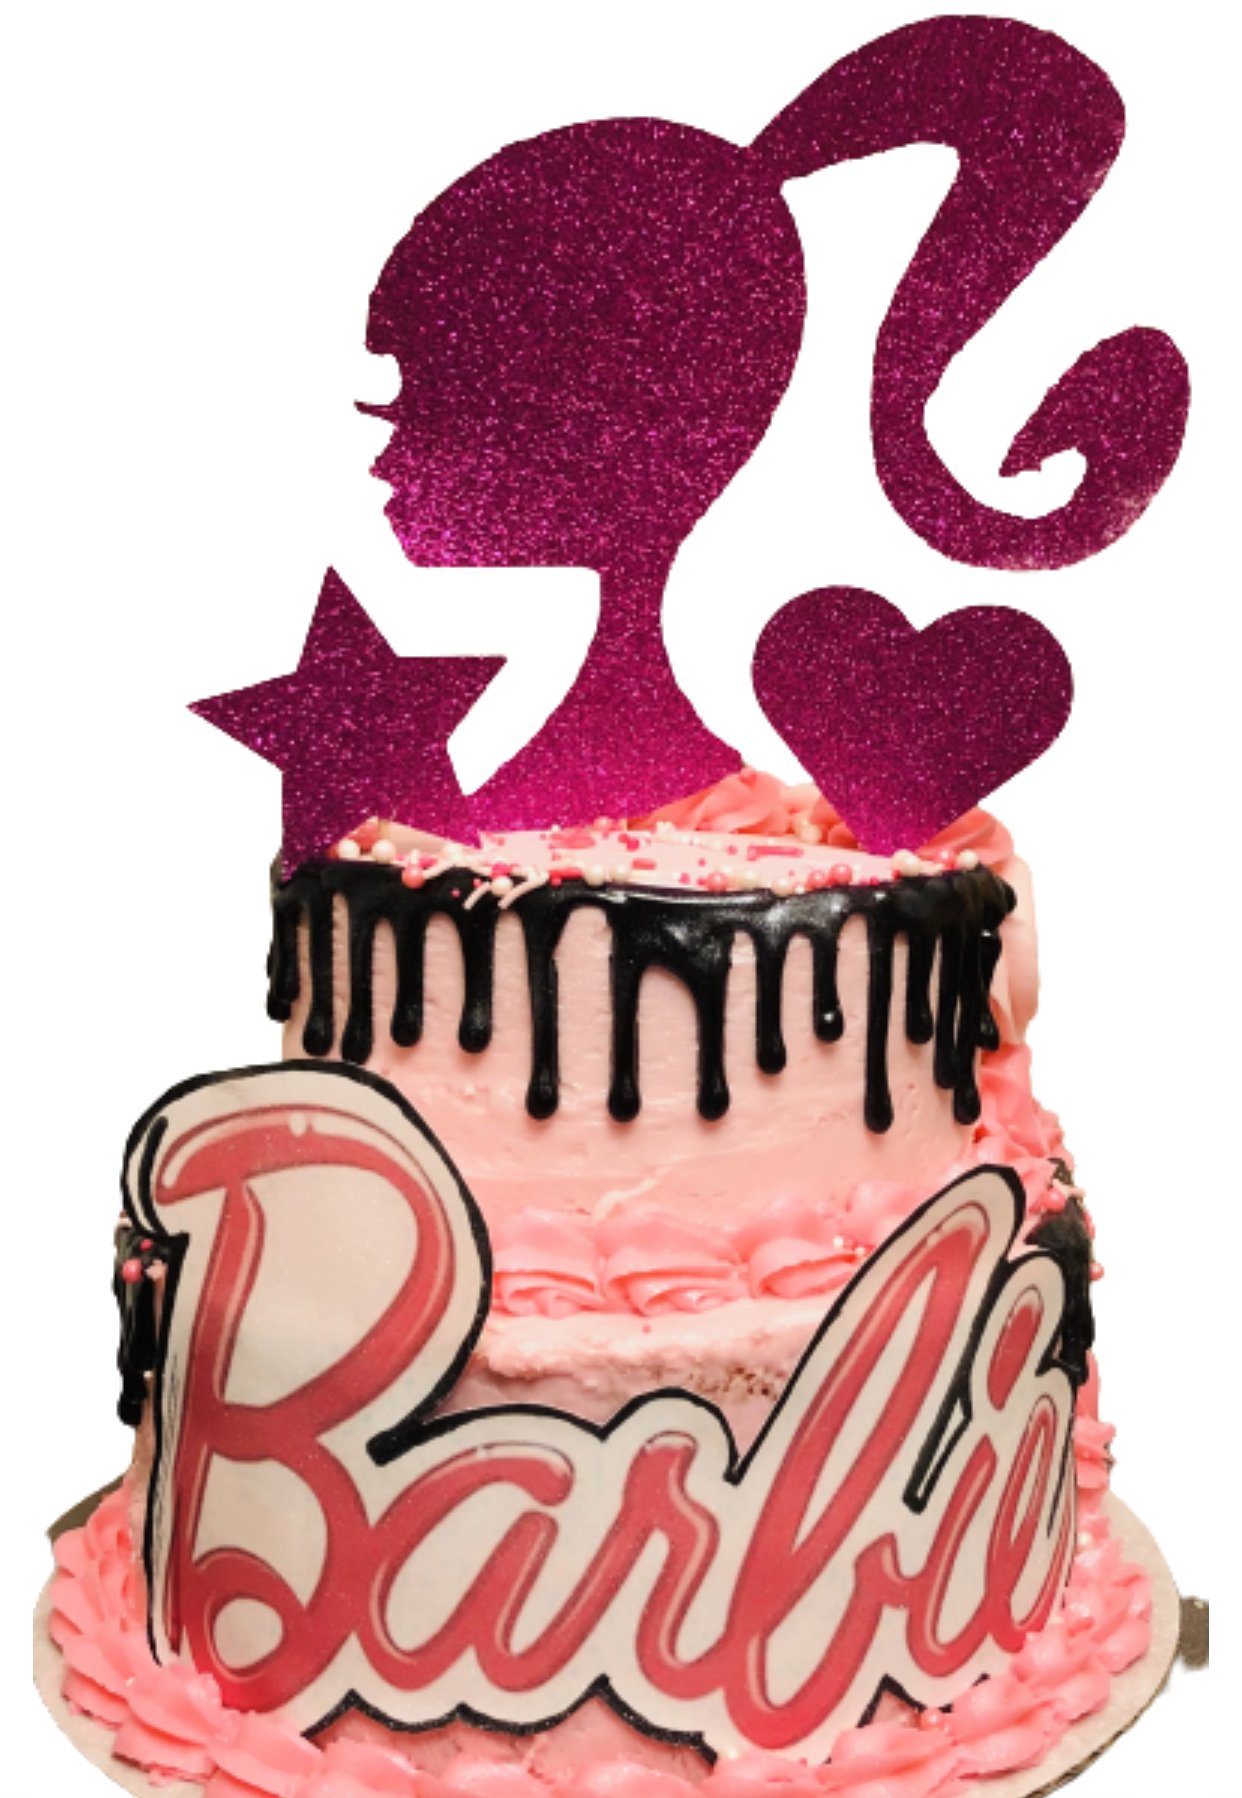 Princess Barbie cake | Made this Barbie cake for a special l… | Flickr